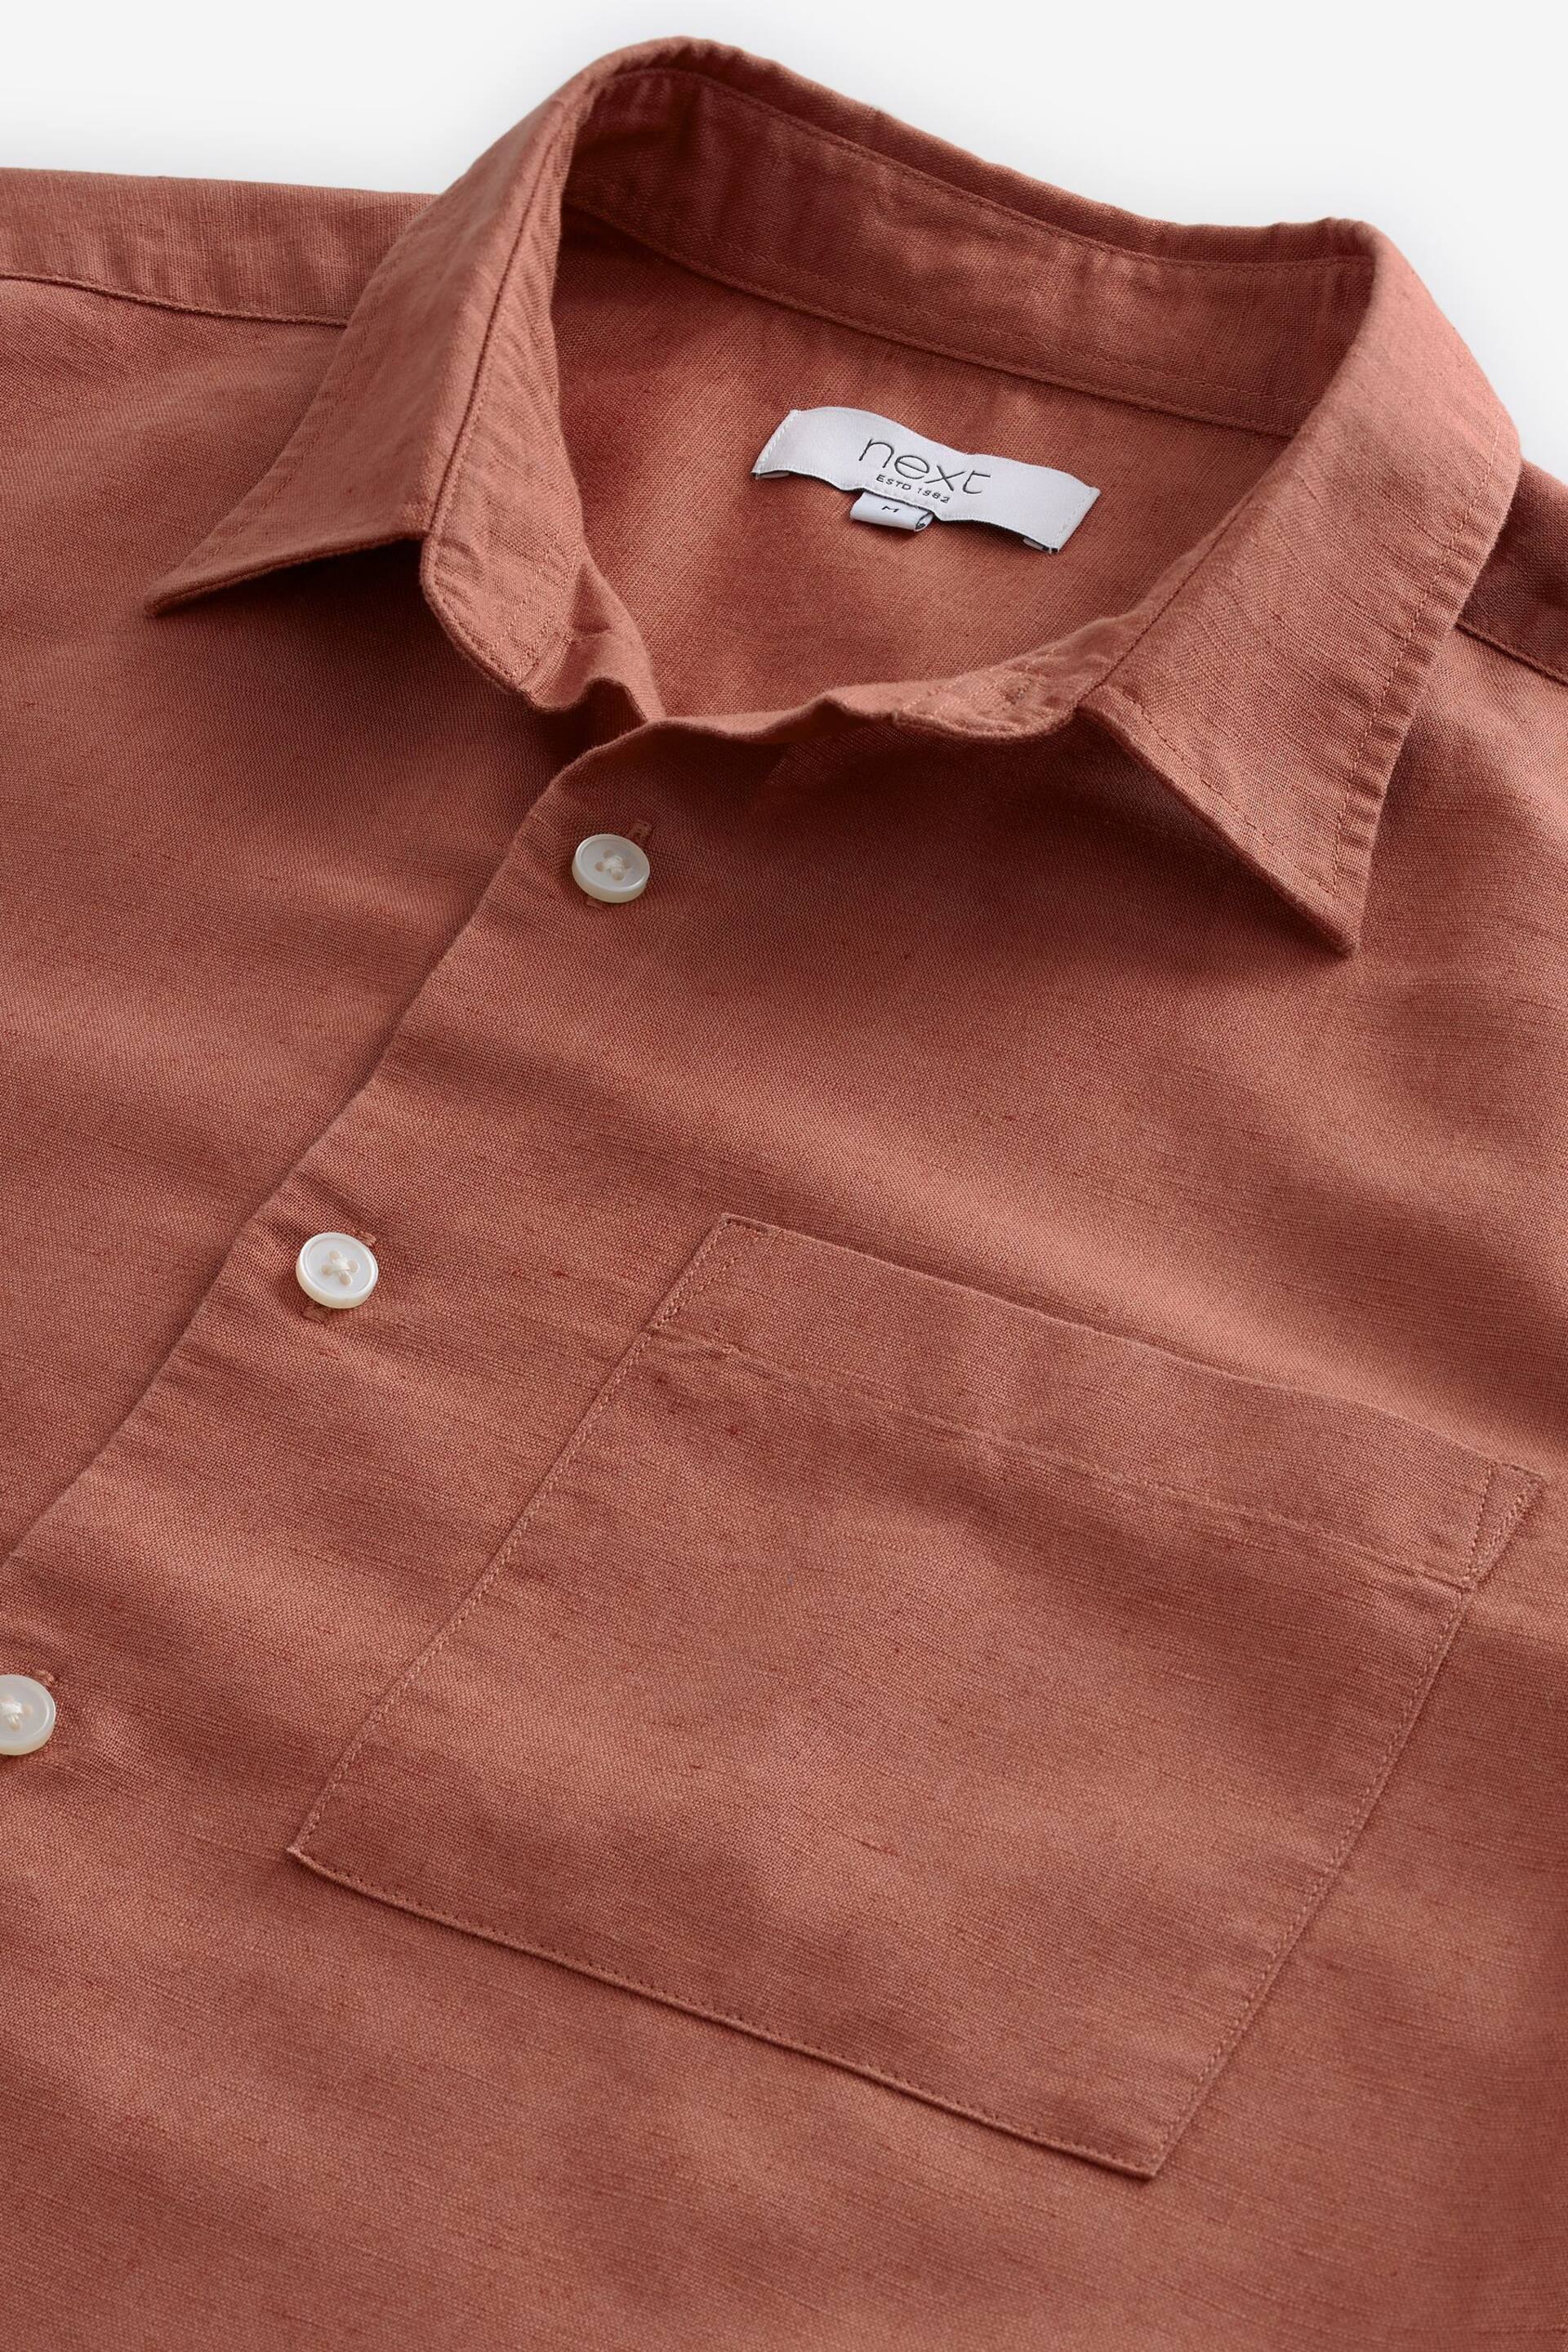 Brown Standard Collar Linen Blend Short Sleeve Shirt - Image 7 of 8